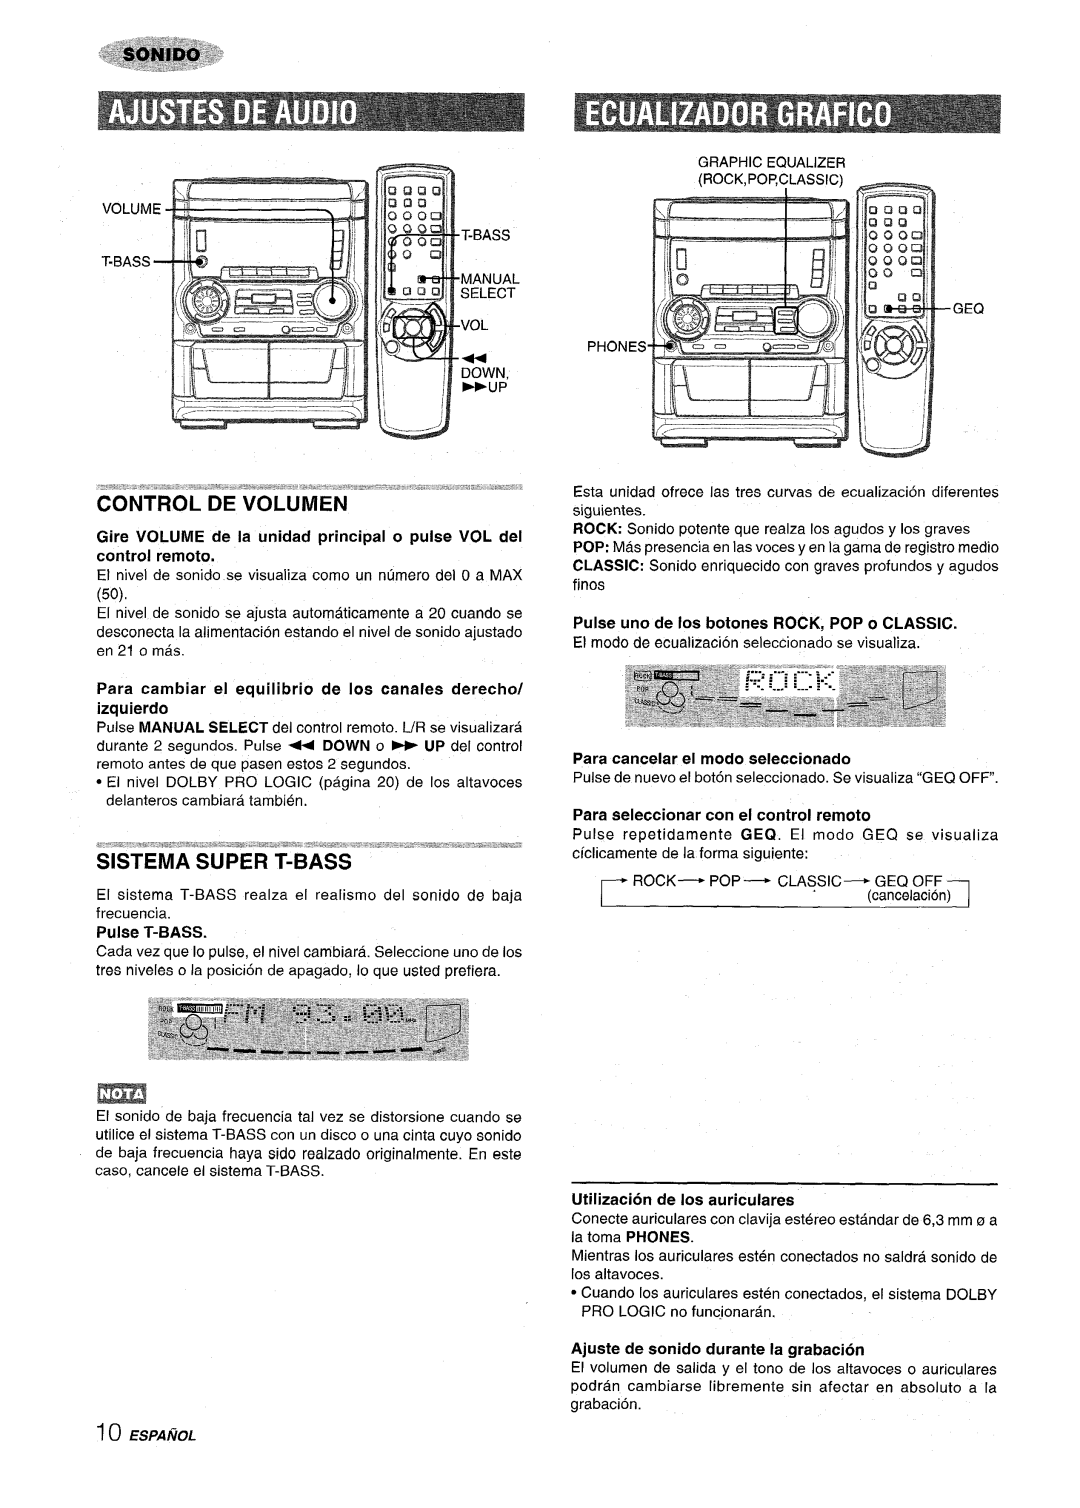 Aiwa SX-C605 Control De Volumen, Sistema Super T-Bass, Gire VOLUME de la unidad principal o pulse VOL del control remotom 